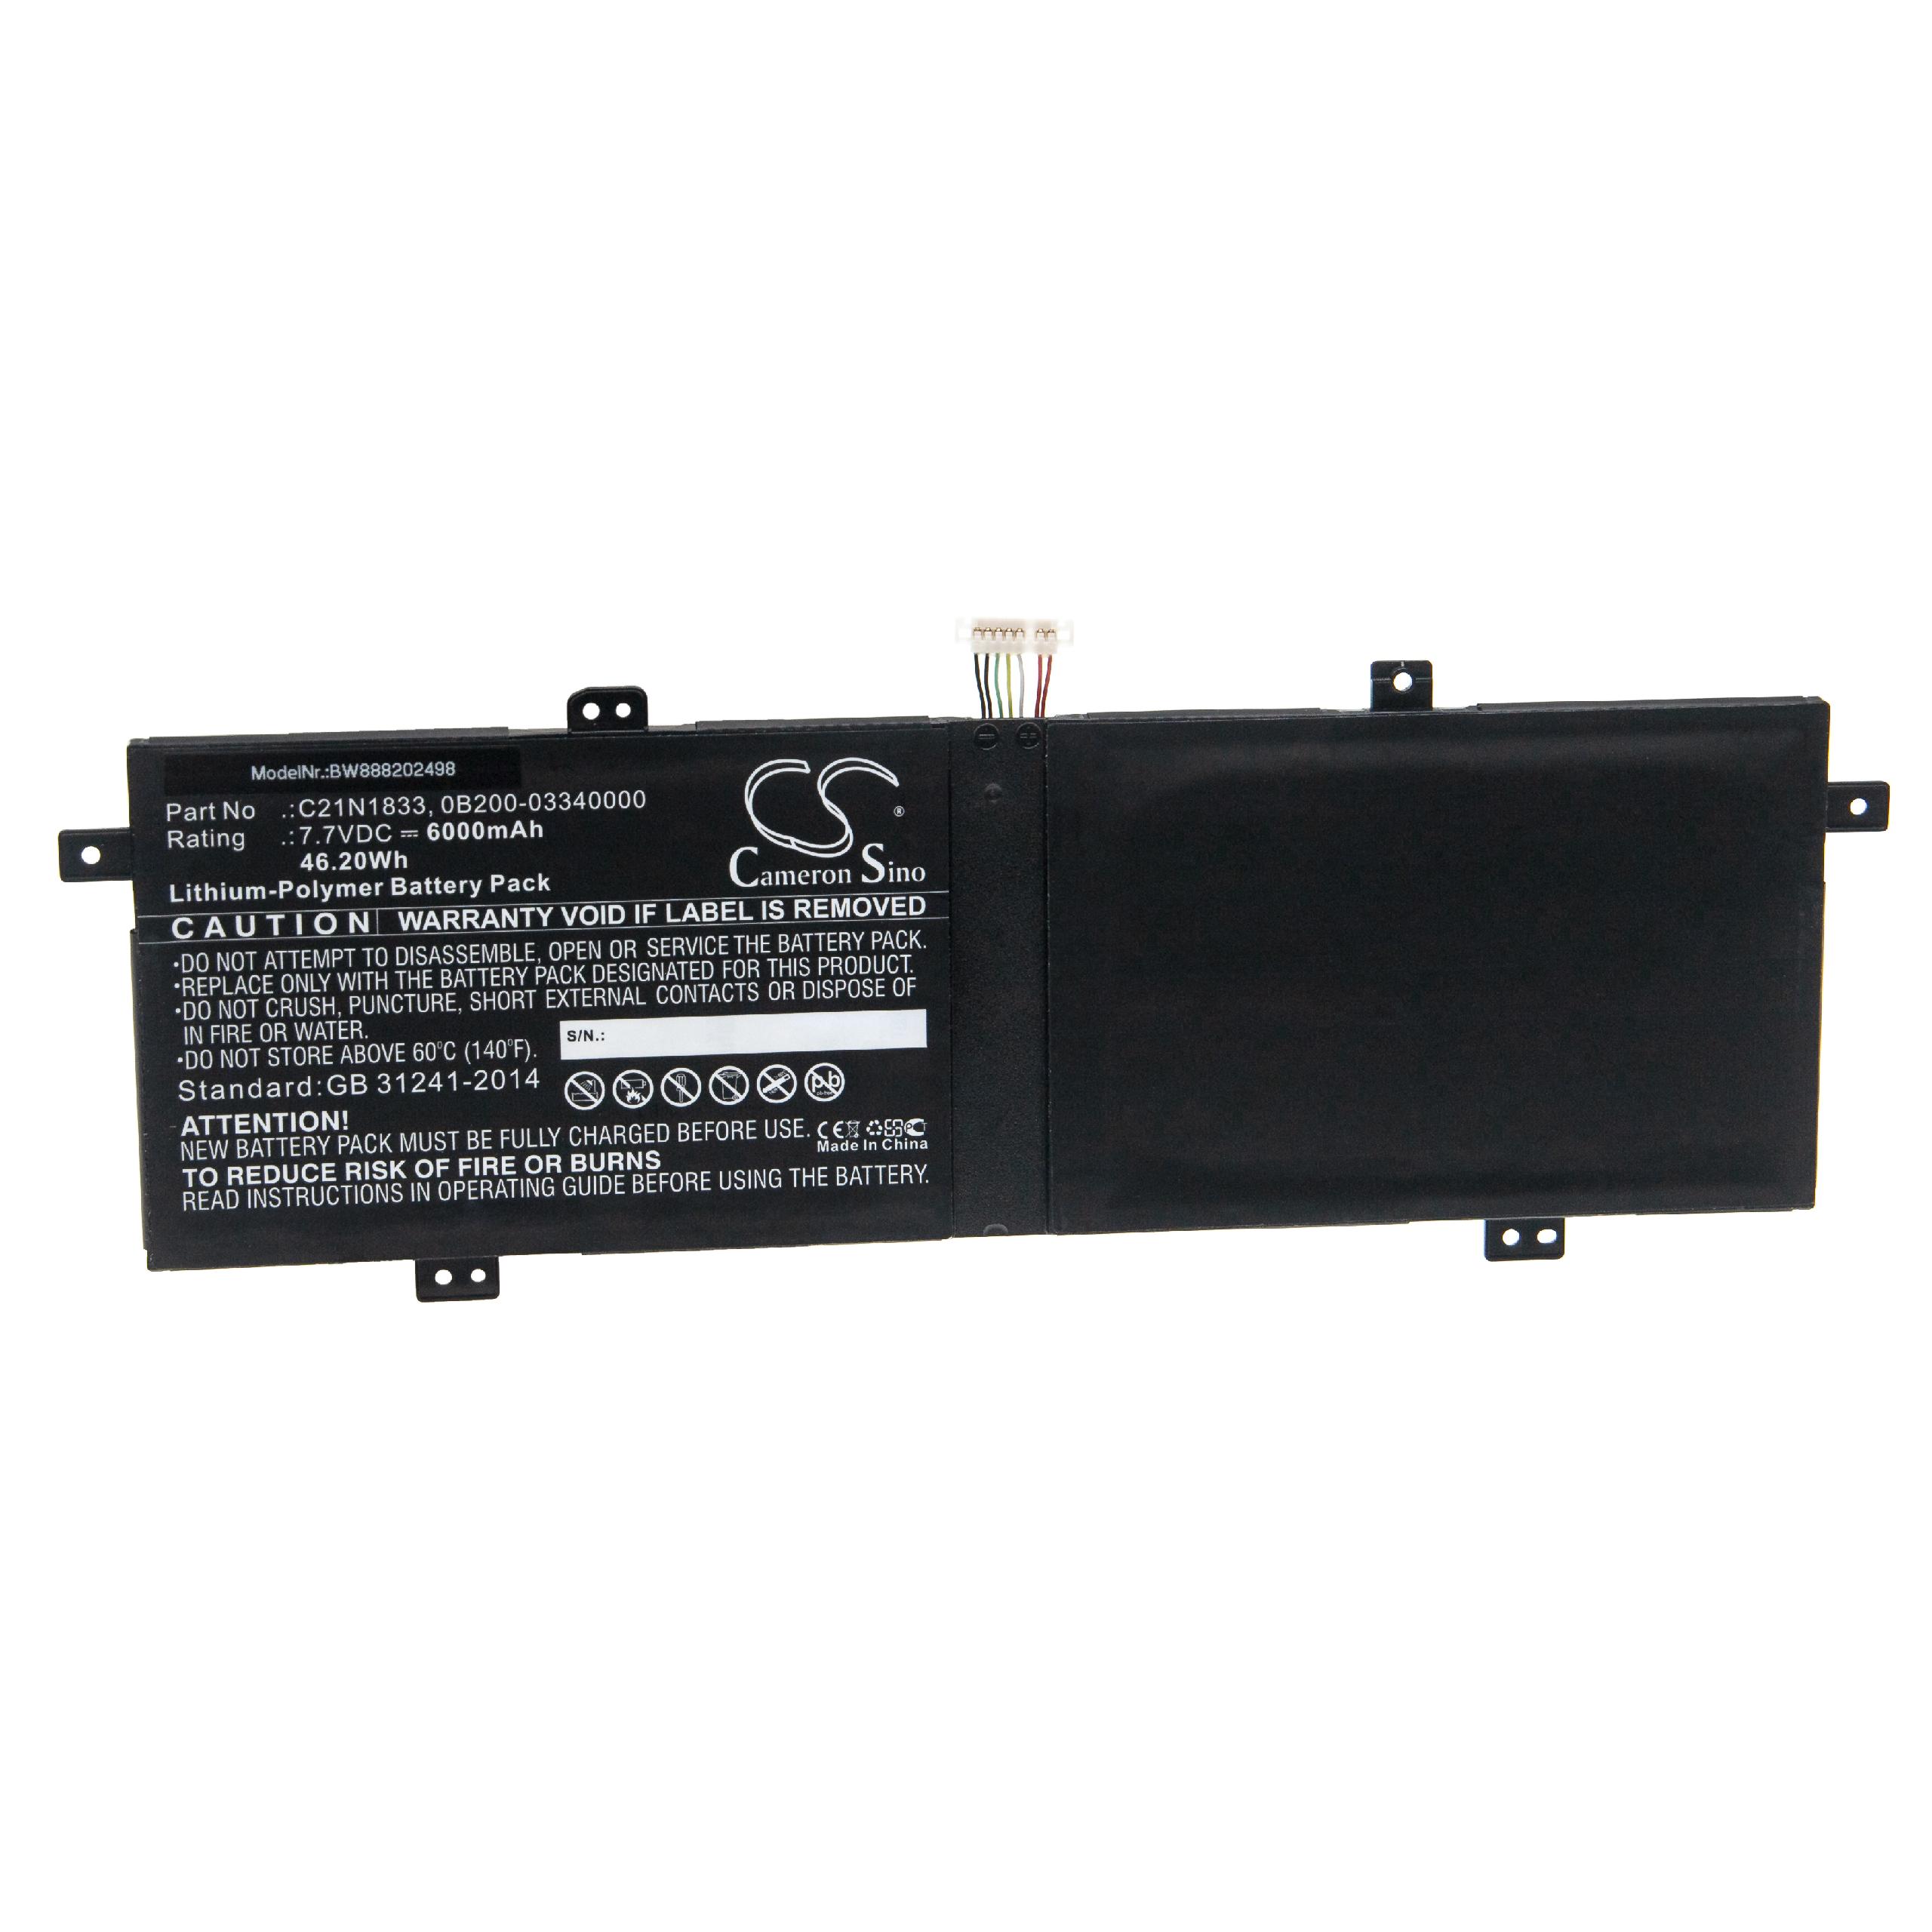 Batterie remplace Asus 0B200-03340000, C21N1833 pour ordinateur portable - 6000mAh 7,7V Li-polymère